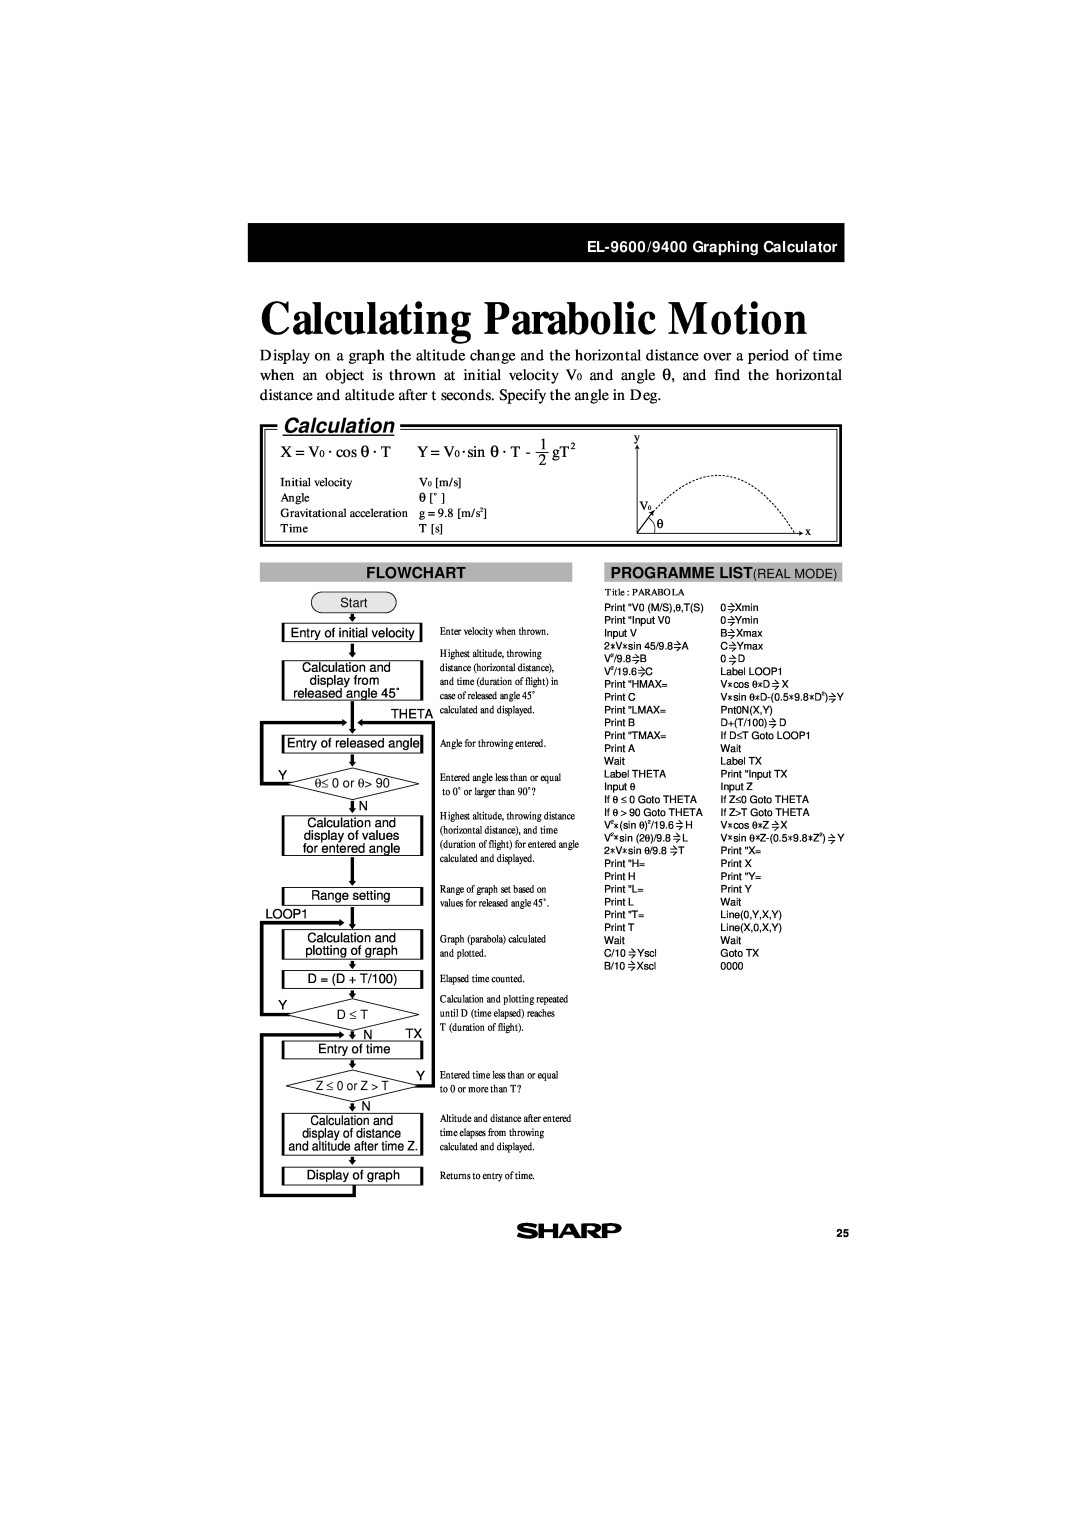 Sharp EL-9400, EL-9600 manual Calculating Parabolic Motion, X = V 0 cos θ T, Y = V 0 sin θ T, 2 gT, Calculation, Flowchart 